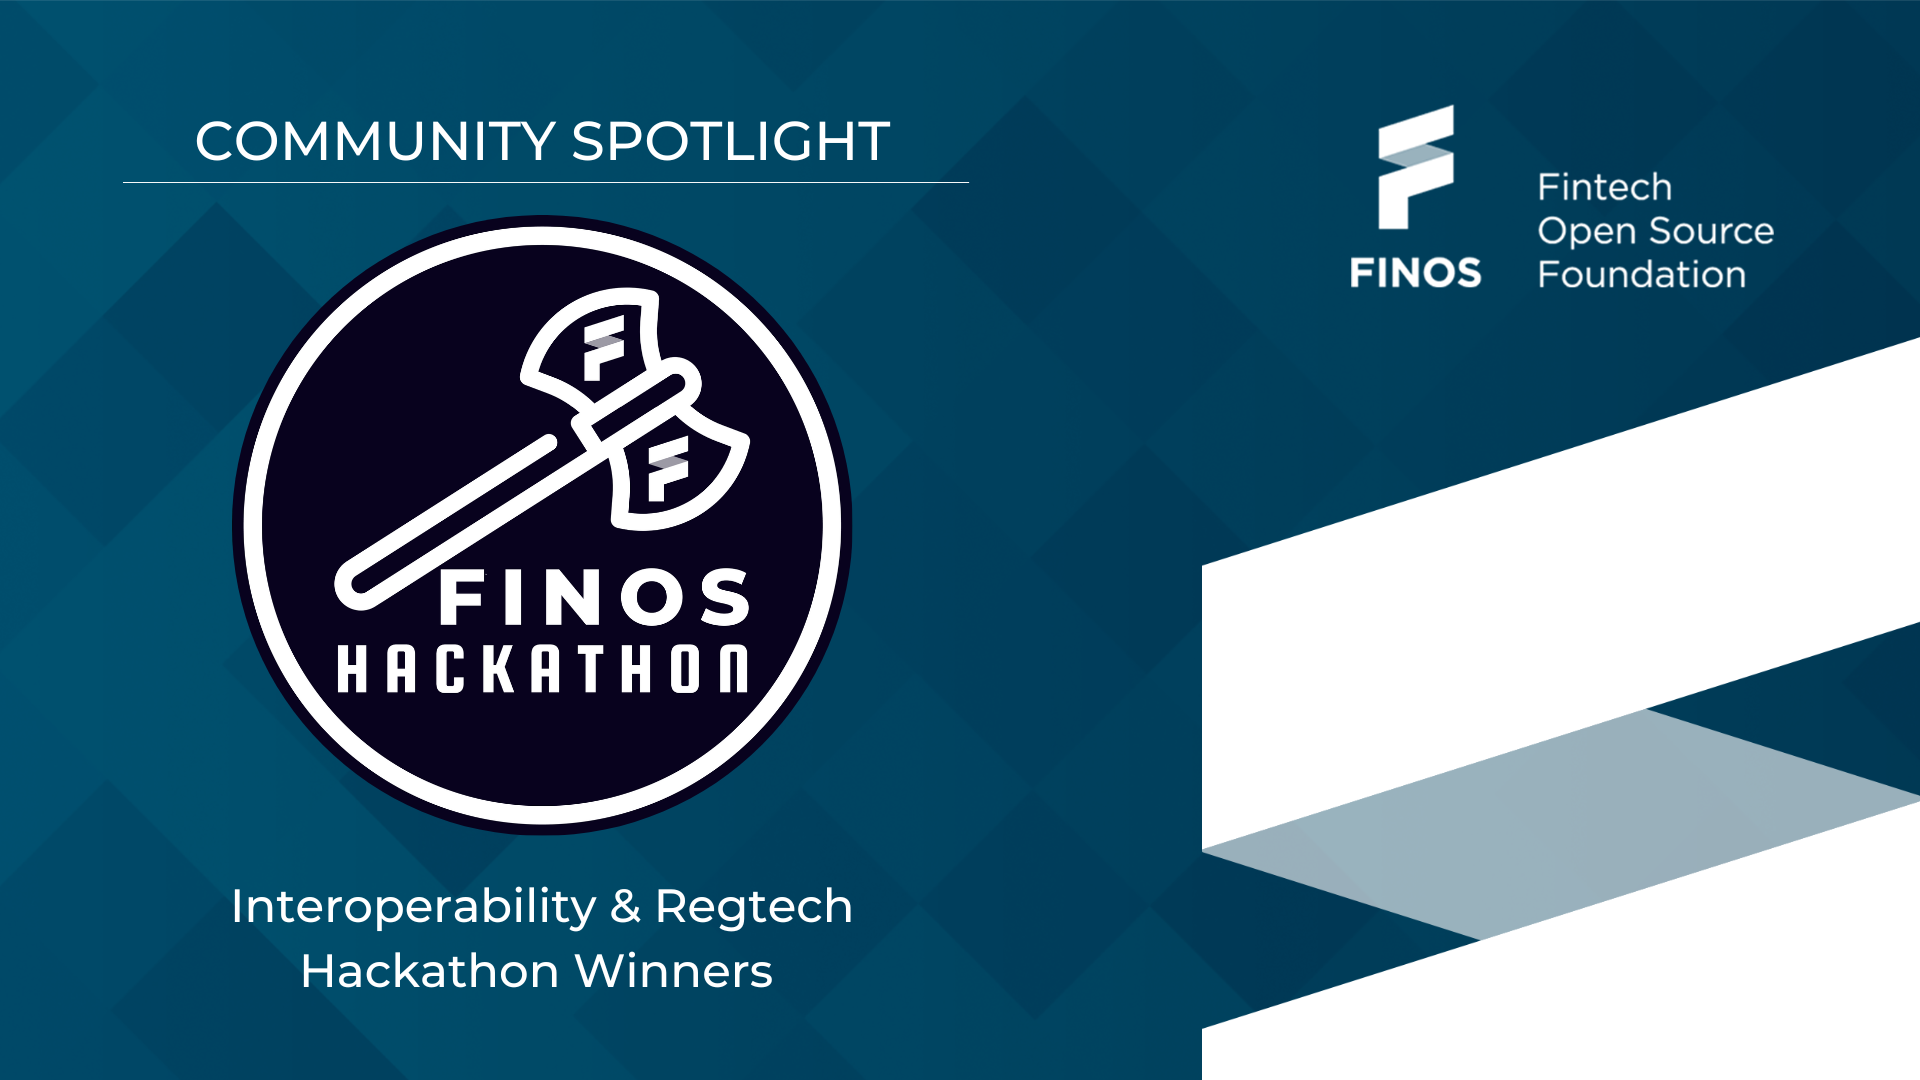 Community Spotlight: Interoperability & Regtech Hackathon Winners